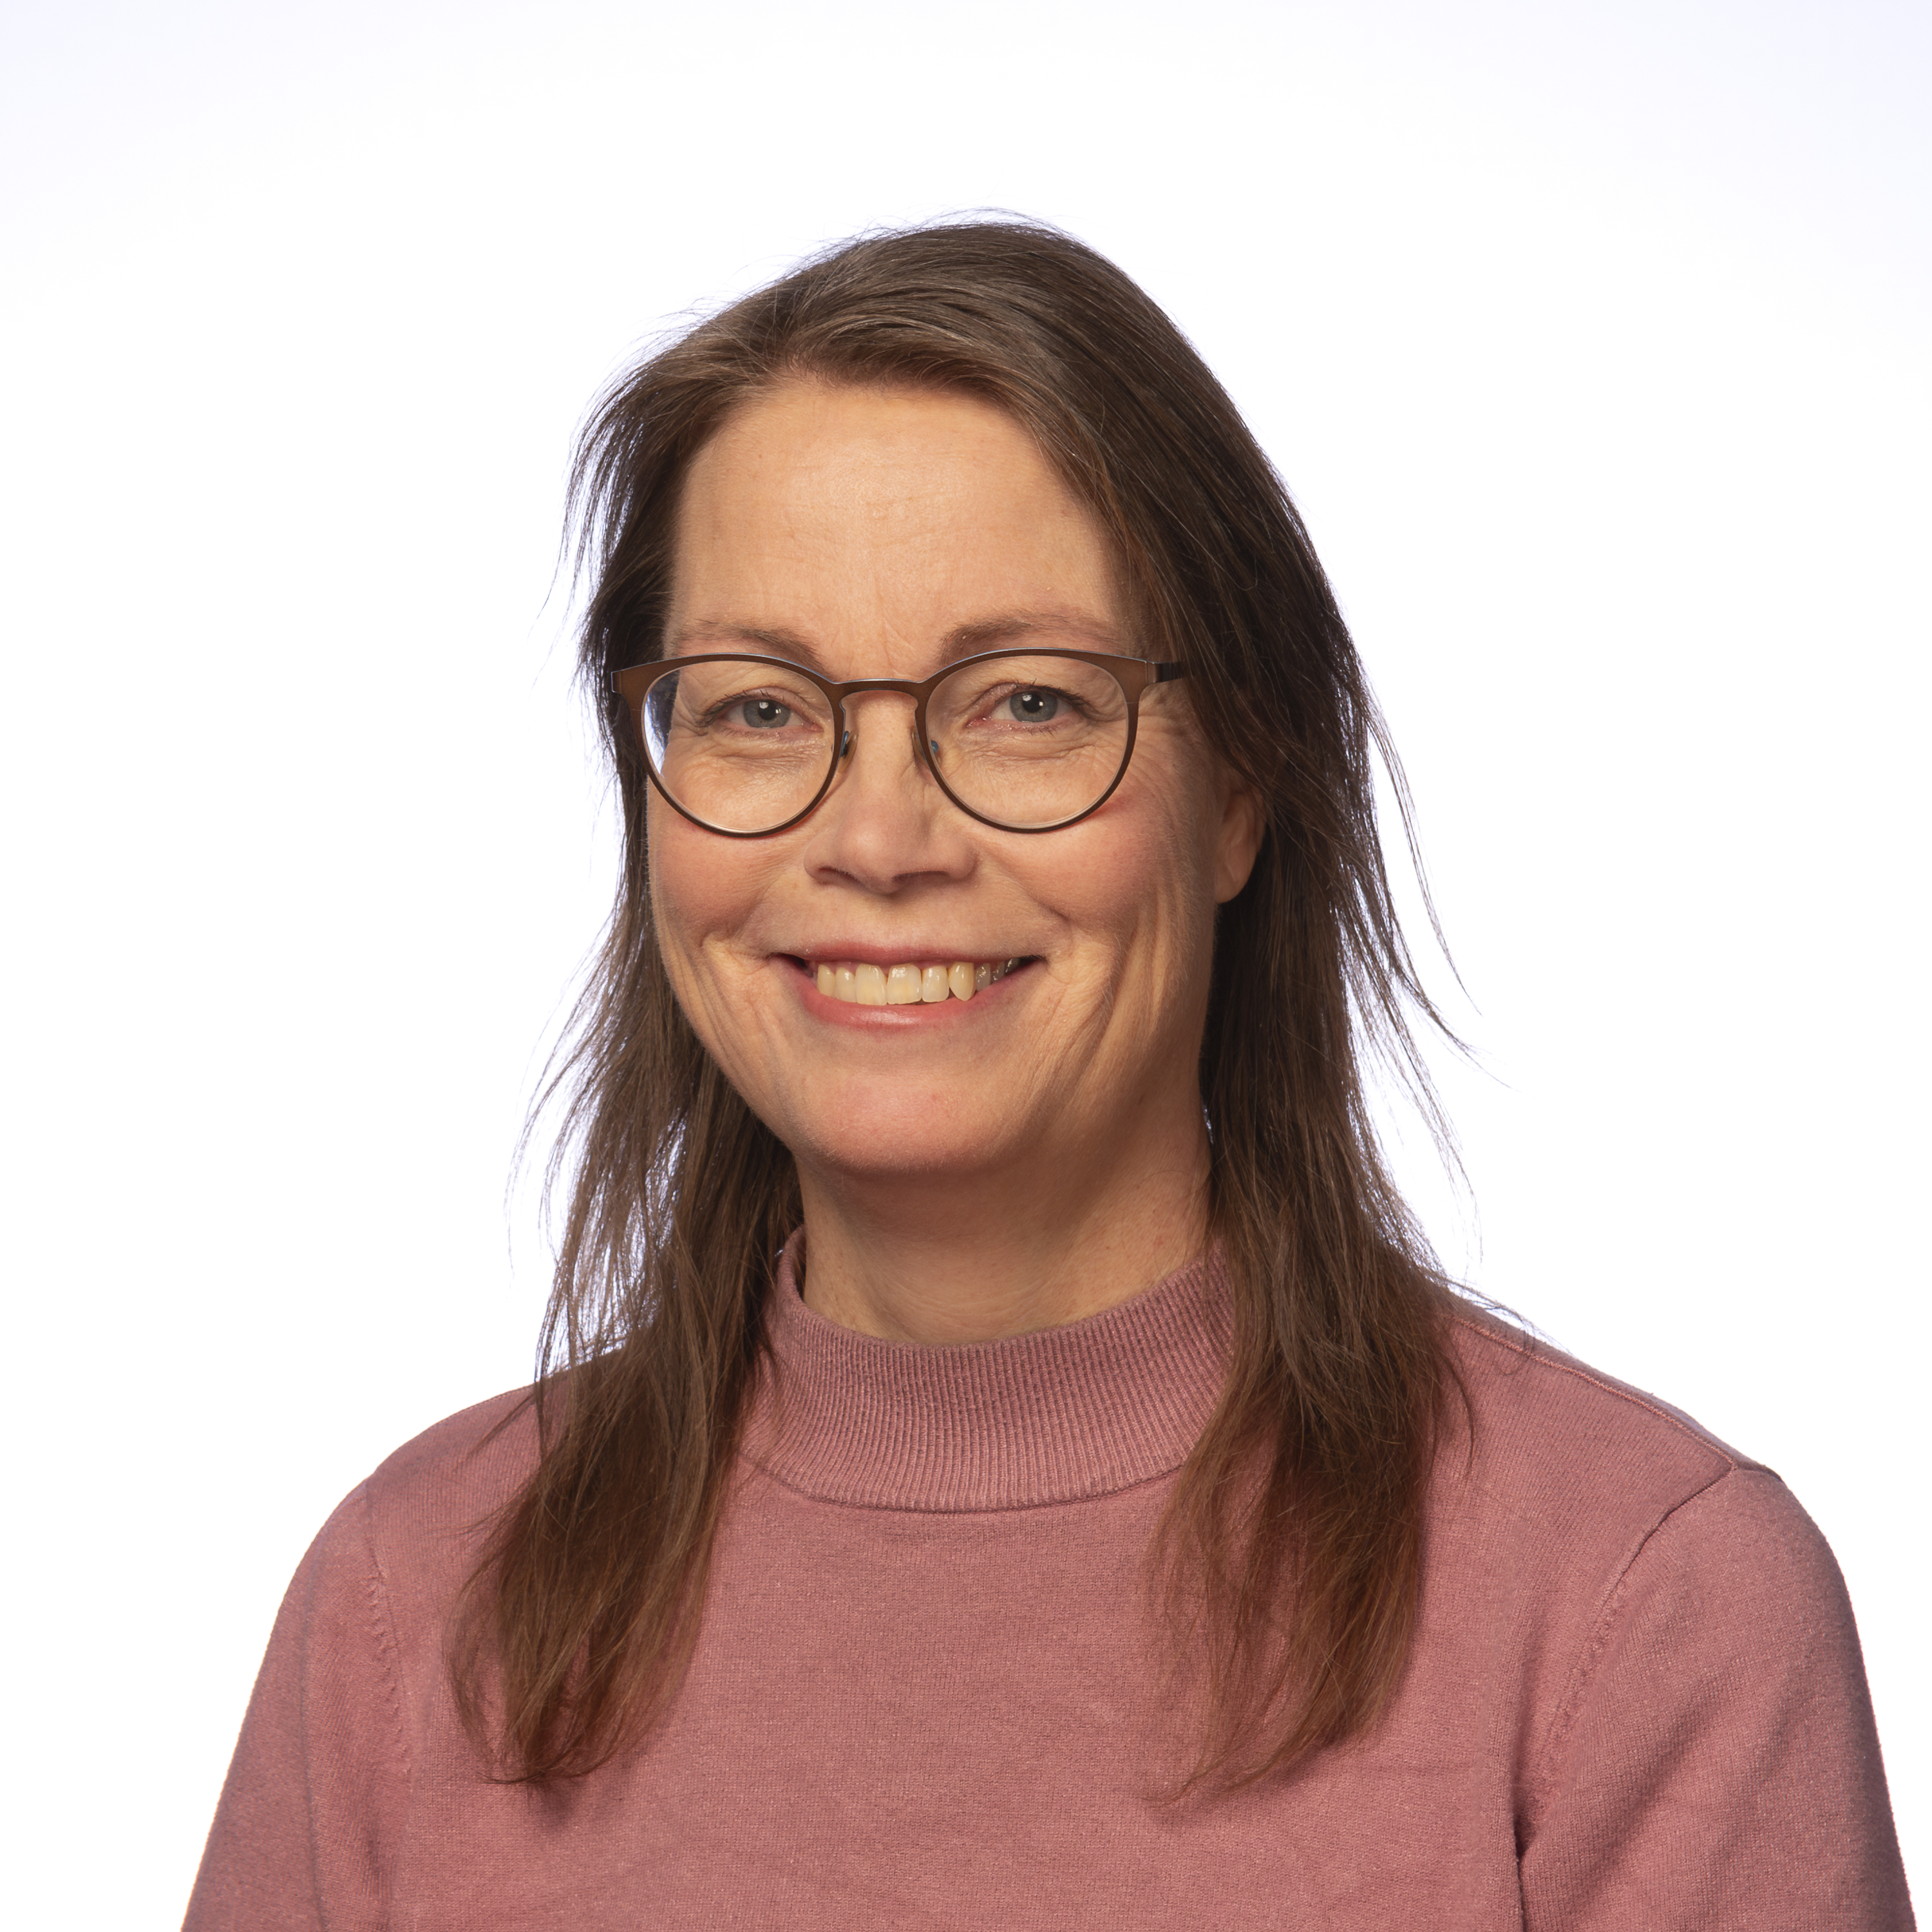 Jenni Vahlström